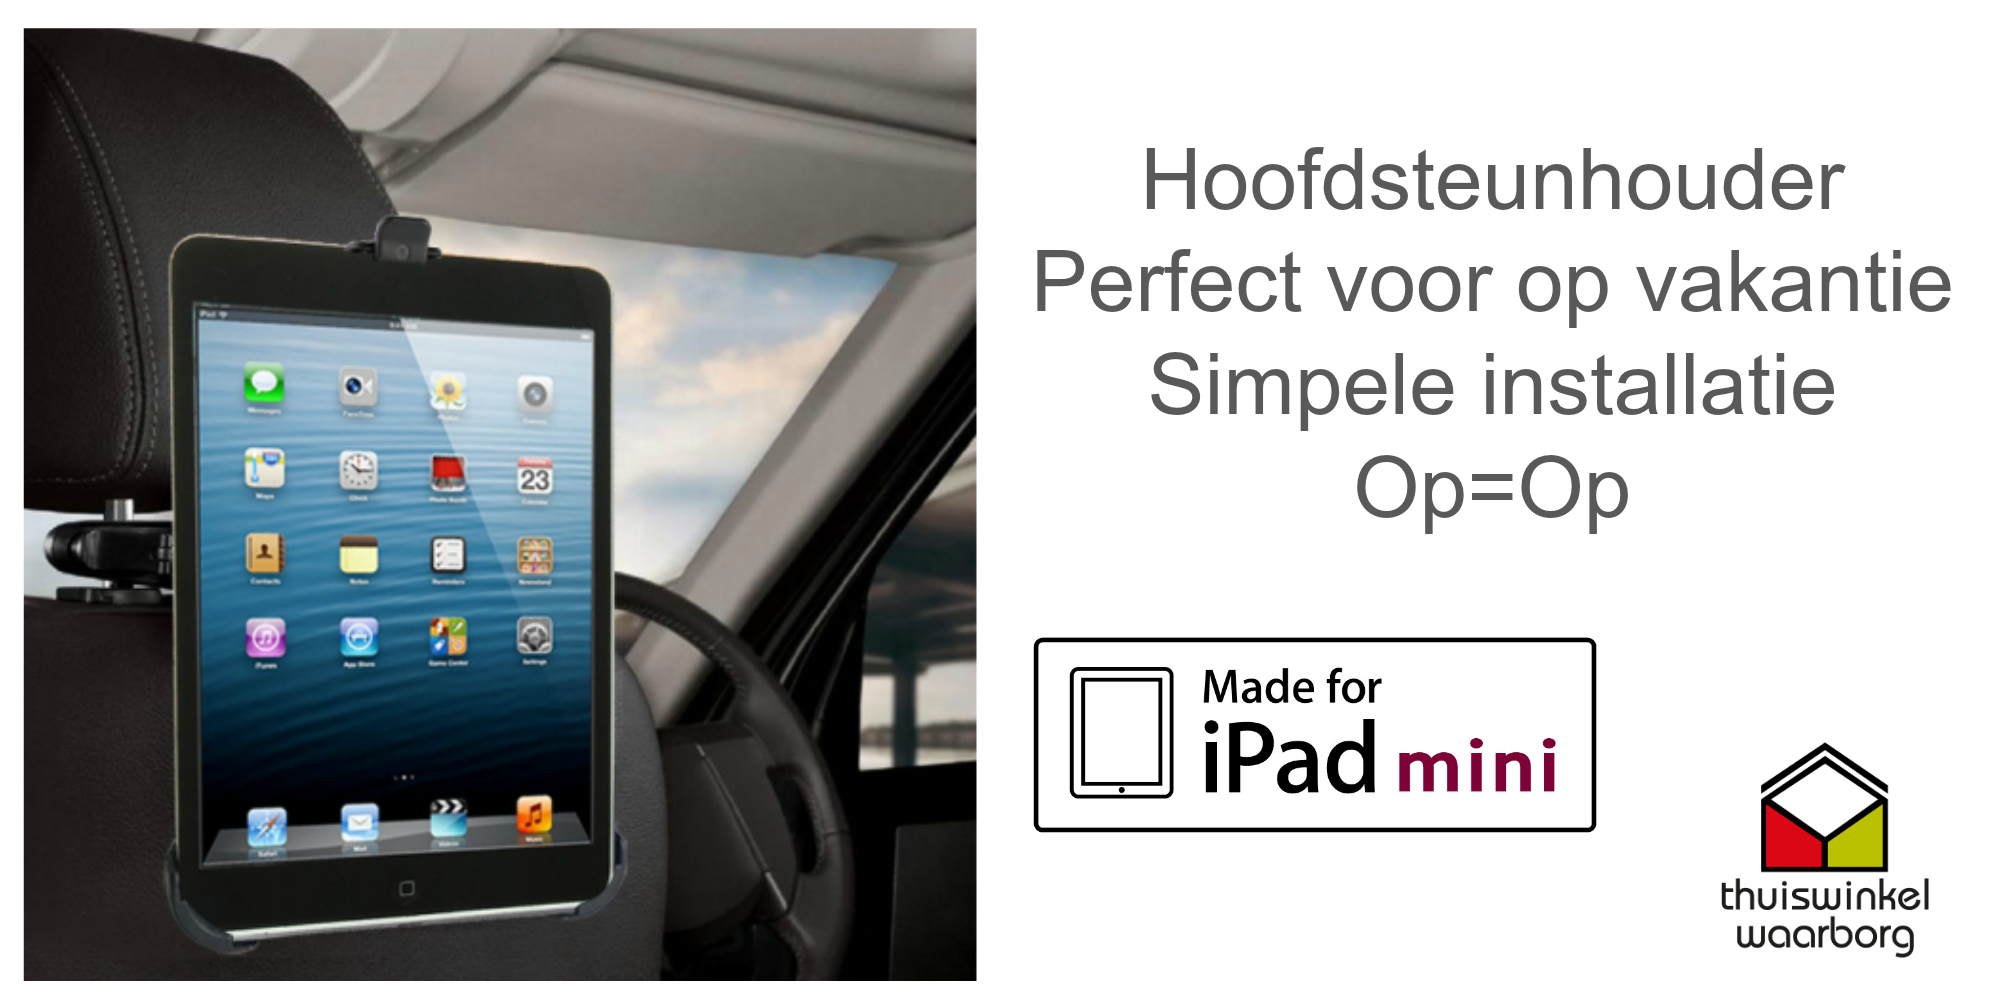 One Day Price - Hoofdsteunhouder geschikt voor iPad mini/mini 2 Retina